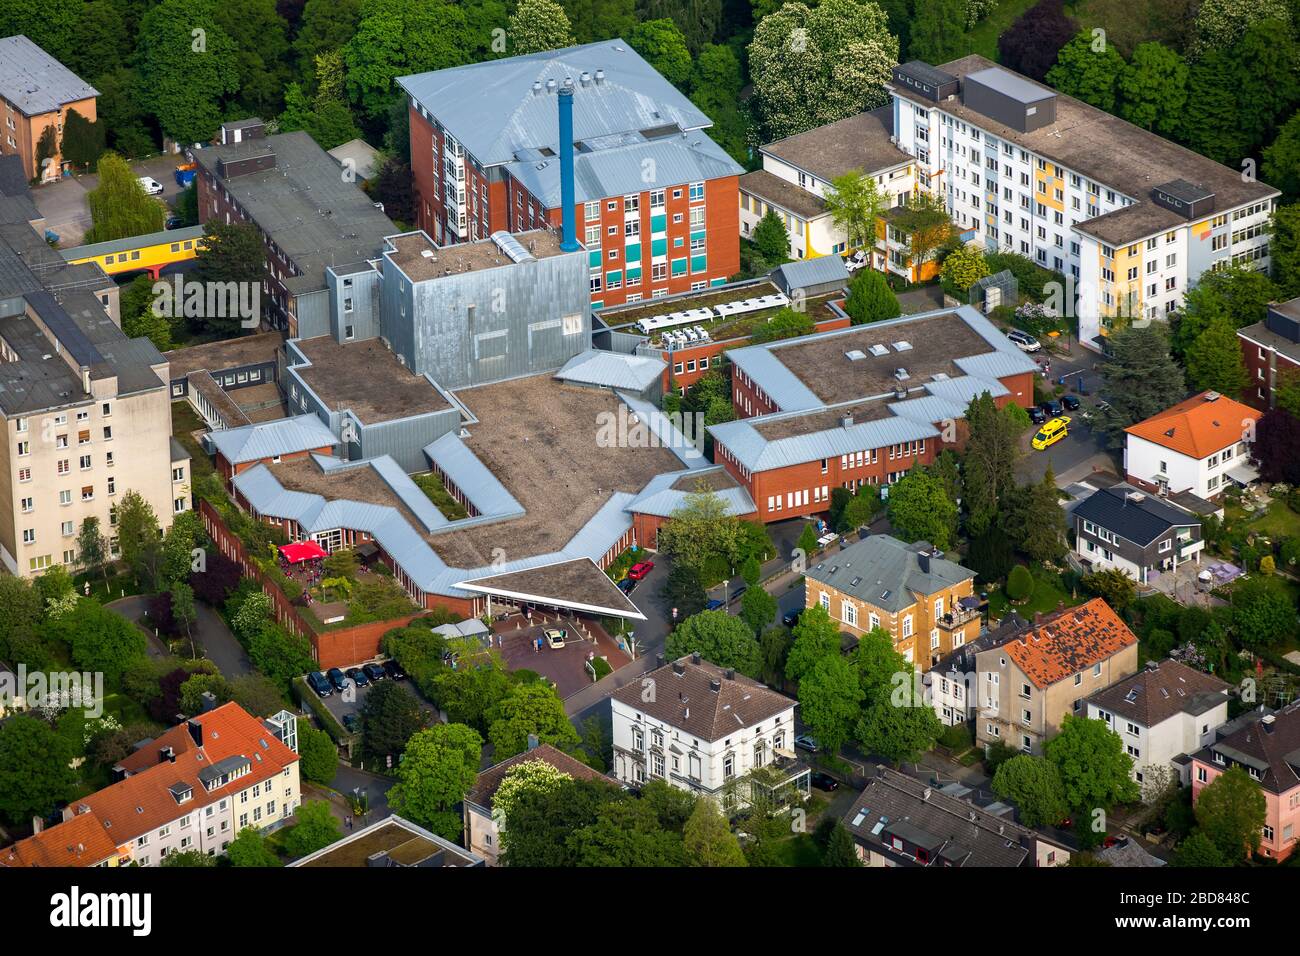 , hospital Allgemeines Krankenhaus Hagen, 09.05.2016, aerial view, Germany, North Rhine-Westphalia, Ruhr Area, Hagen Stock Photo